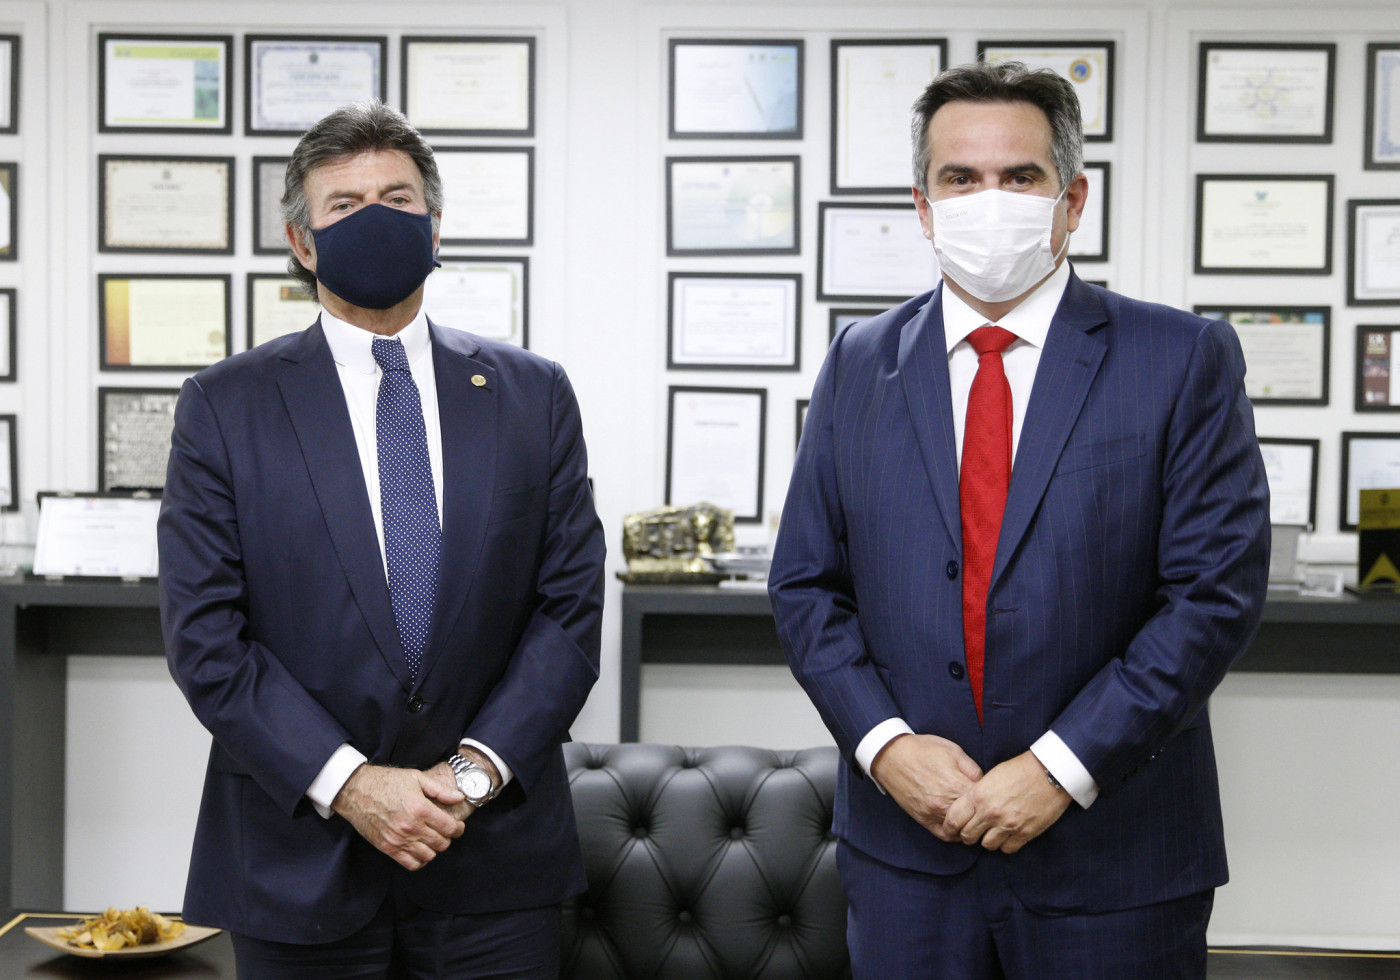 Luiz Fux e Ciro Nogueira, dois homens de terno azul marinho e usando máscaras de proteção lado a lado com distanciamento, posando para a foto.